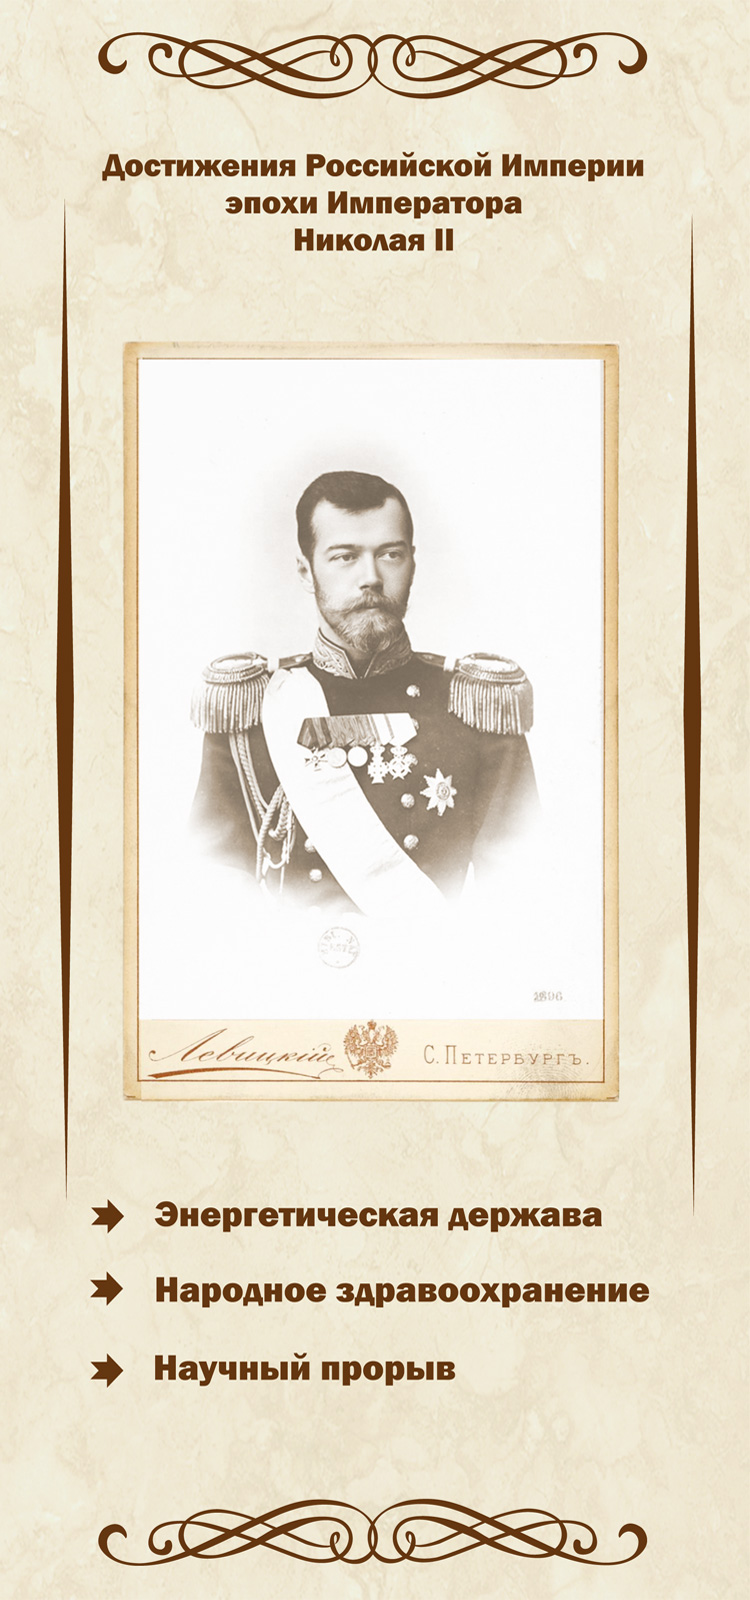 Достижения Российской империи эпохи правления императора Николая II